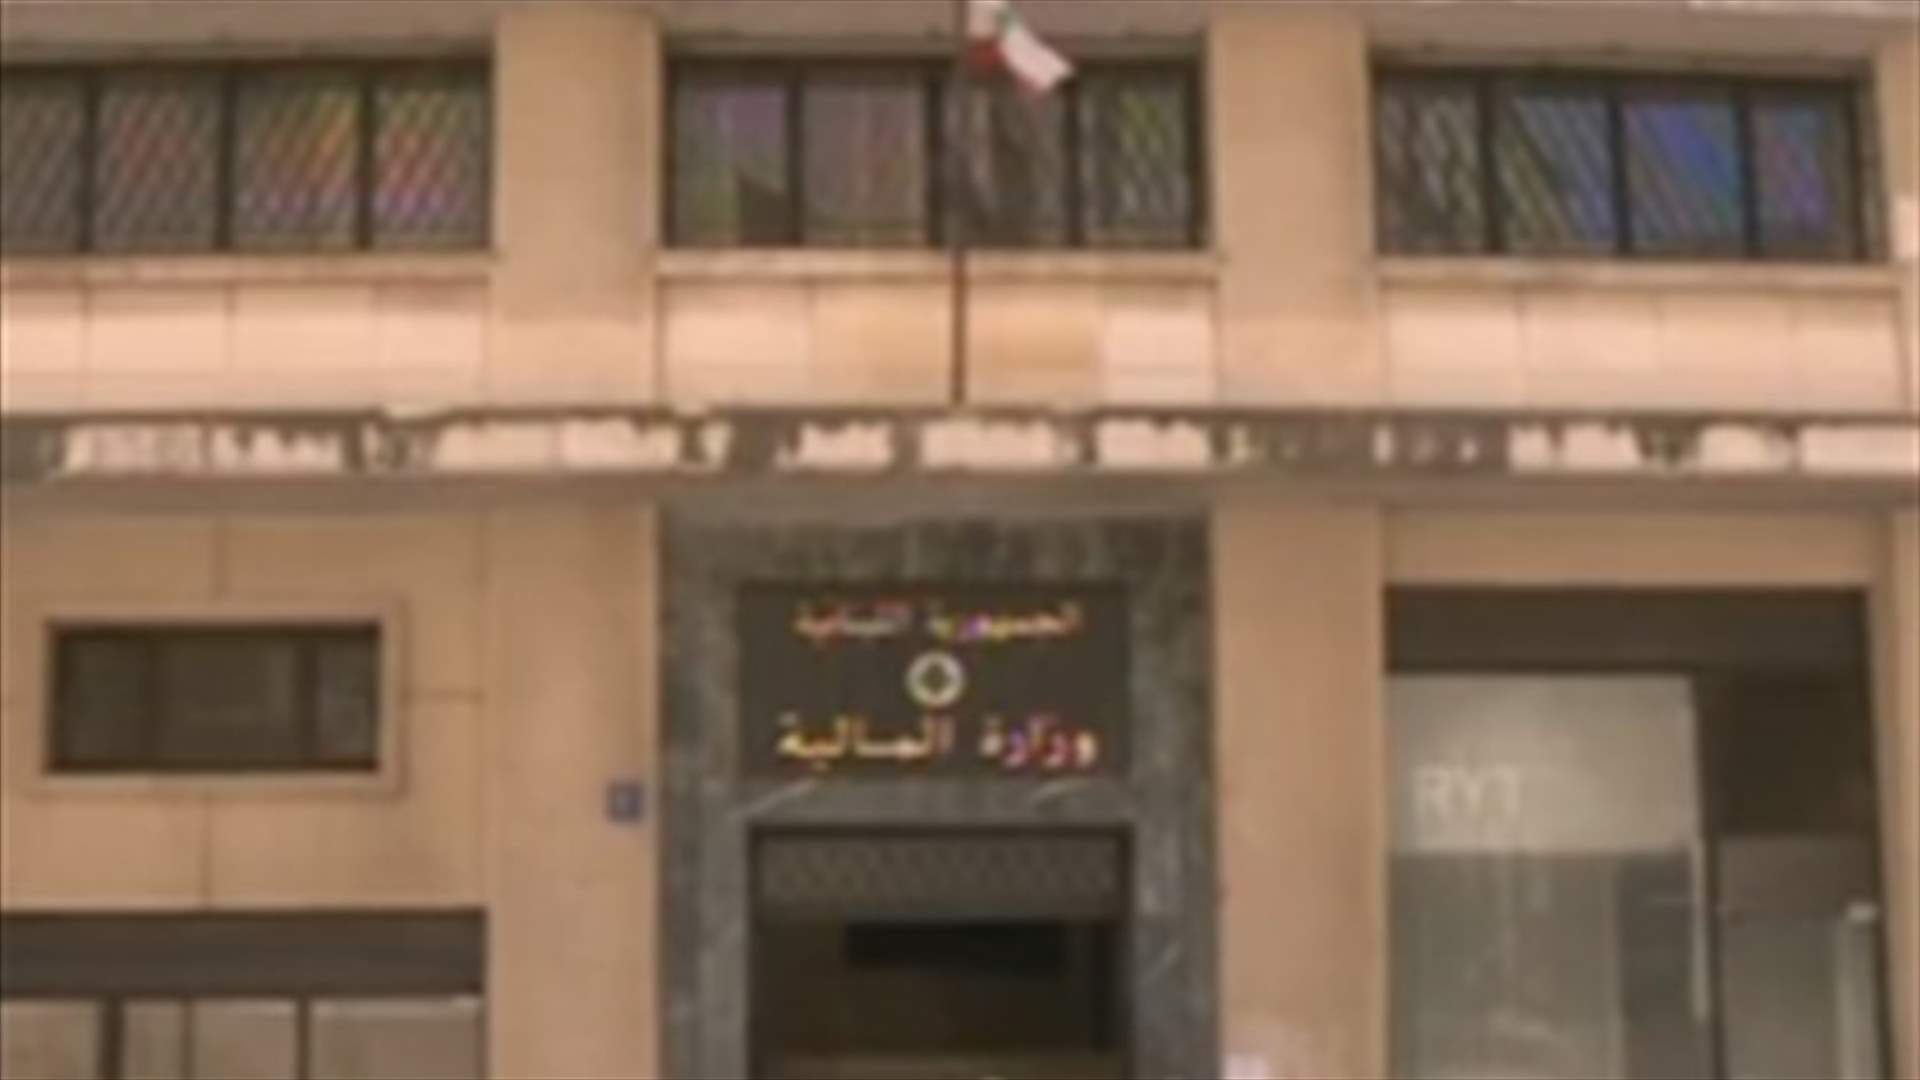 عملية استبدال سندات بين وزارة المالية ومصرف لبنان